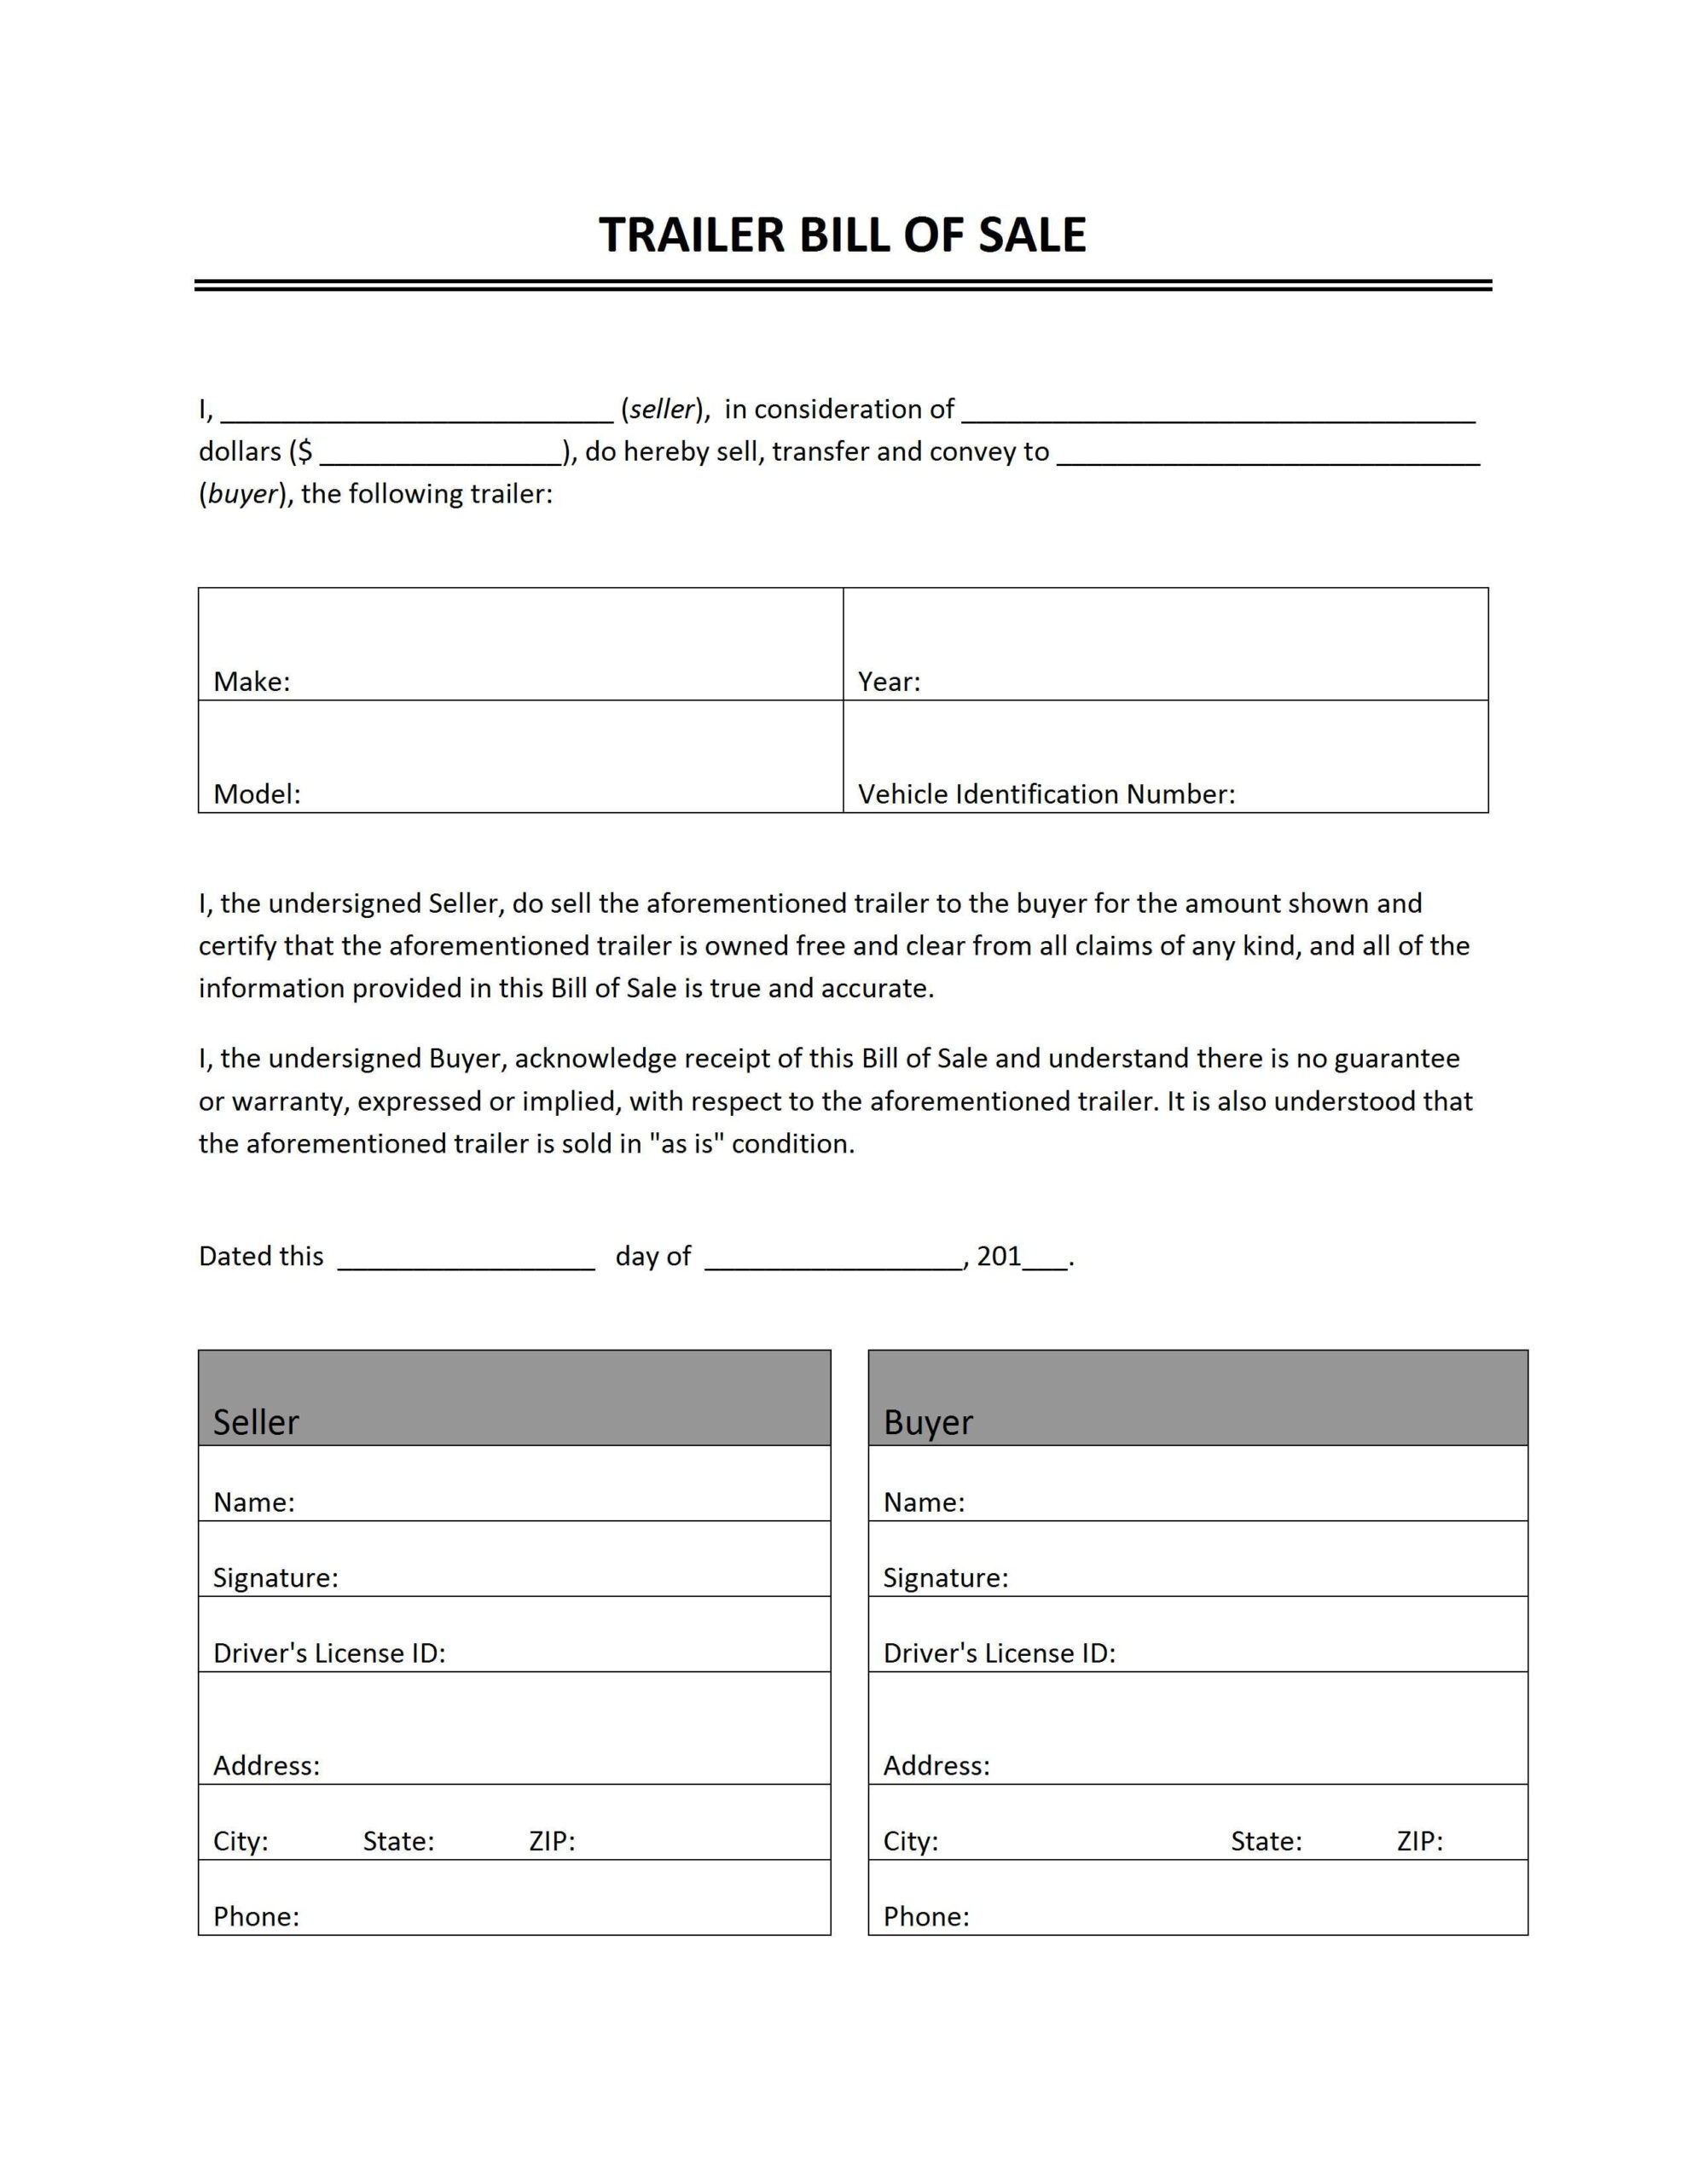 Printable Sample Bill Of Sale Camper Form | Bill Of Sale Template inside Free Printable Bill Of Sale For Trailer